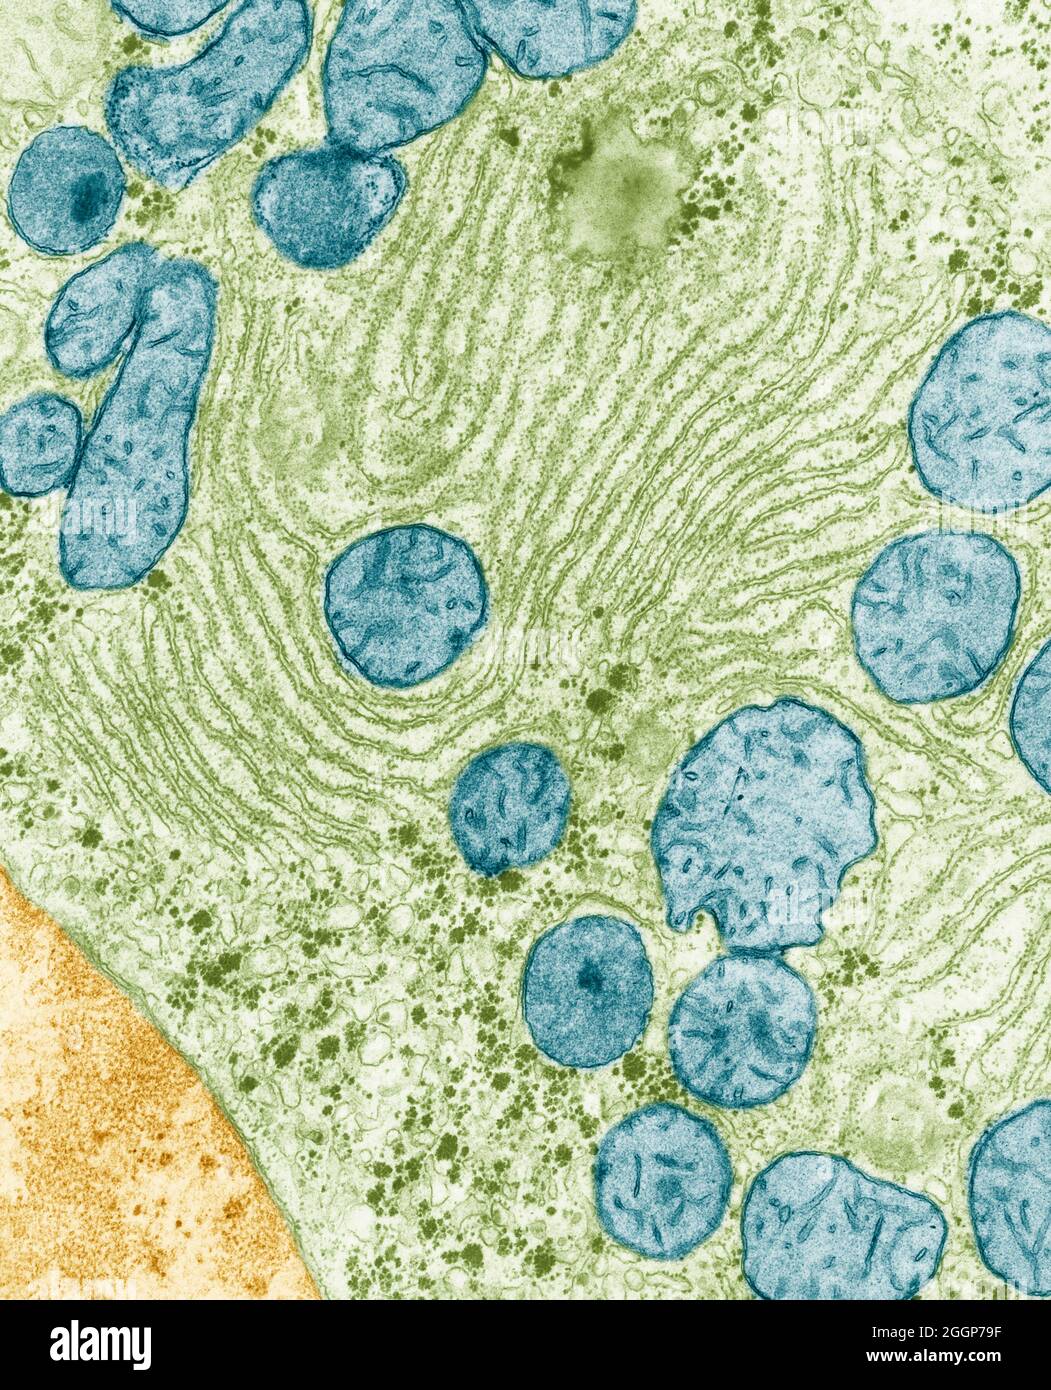 Eingefärbte Transmissionselektronenmikrographie (TEM) von endoplasmatischem Retikulum und Mitochondrien in der Leber einer Ratte. Stockfoto